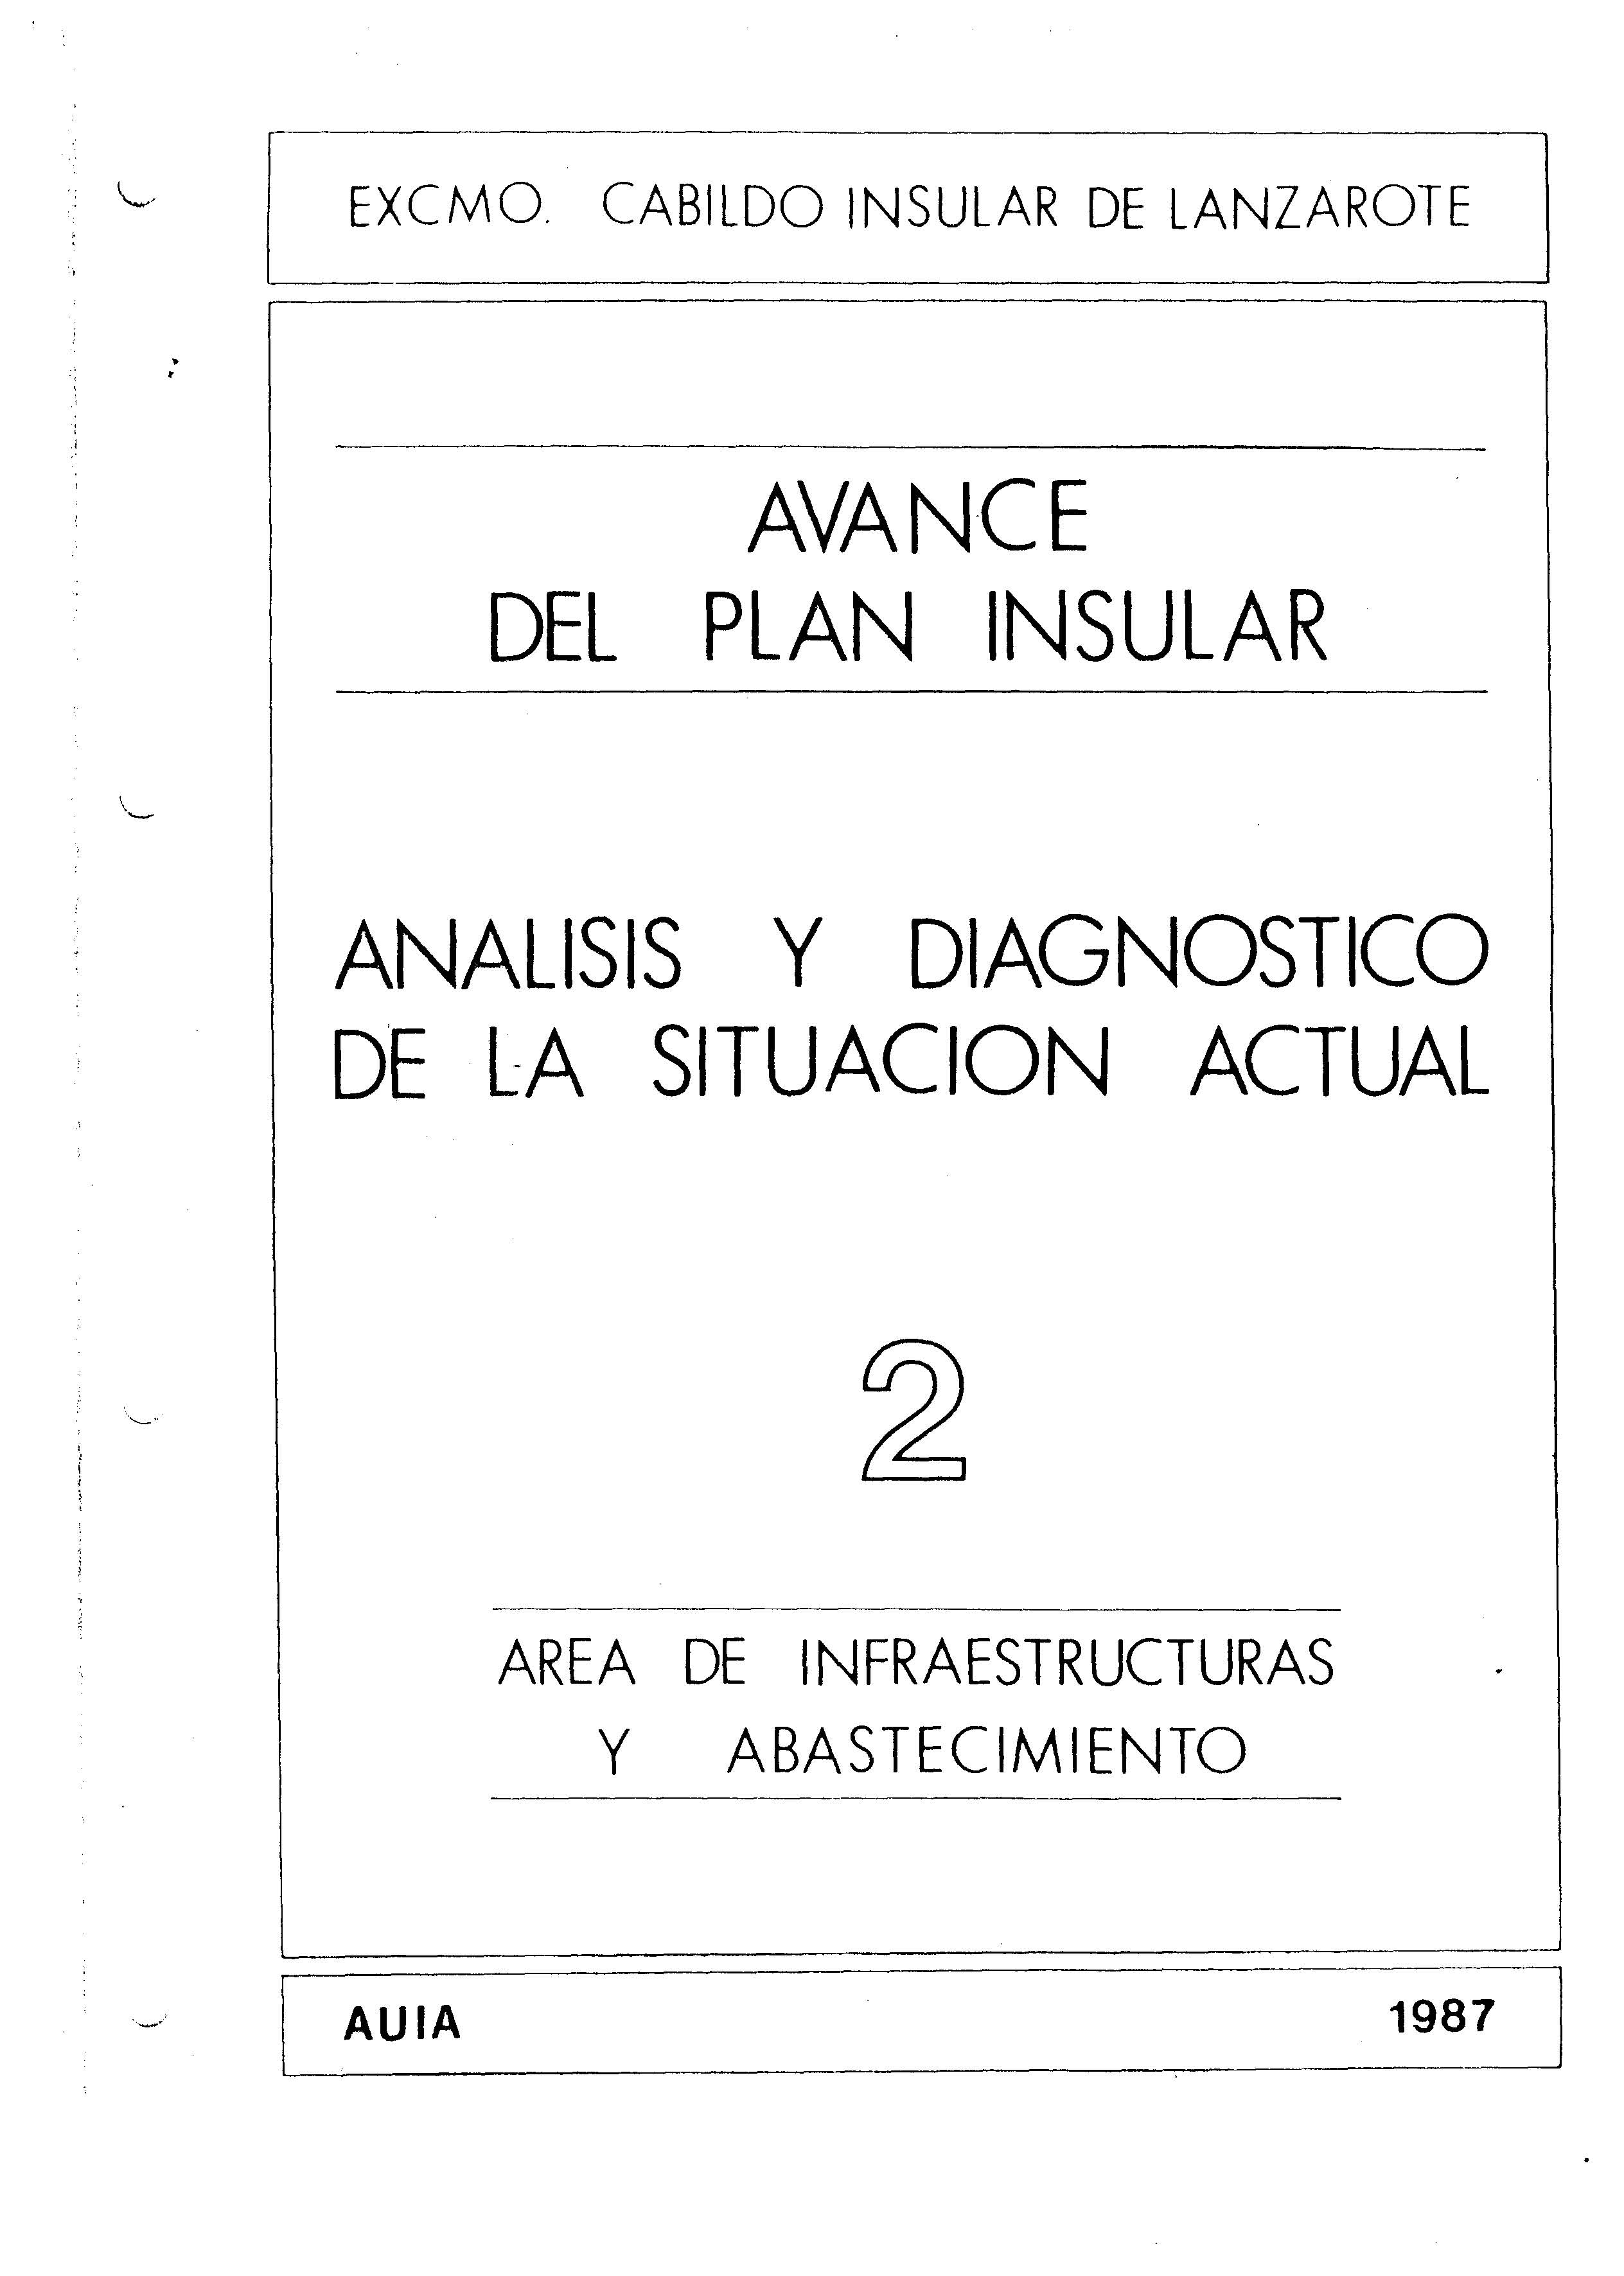 Tomo 2. Infraestructura y absatecimiento. Avance Plan Insular (1987)